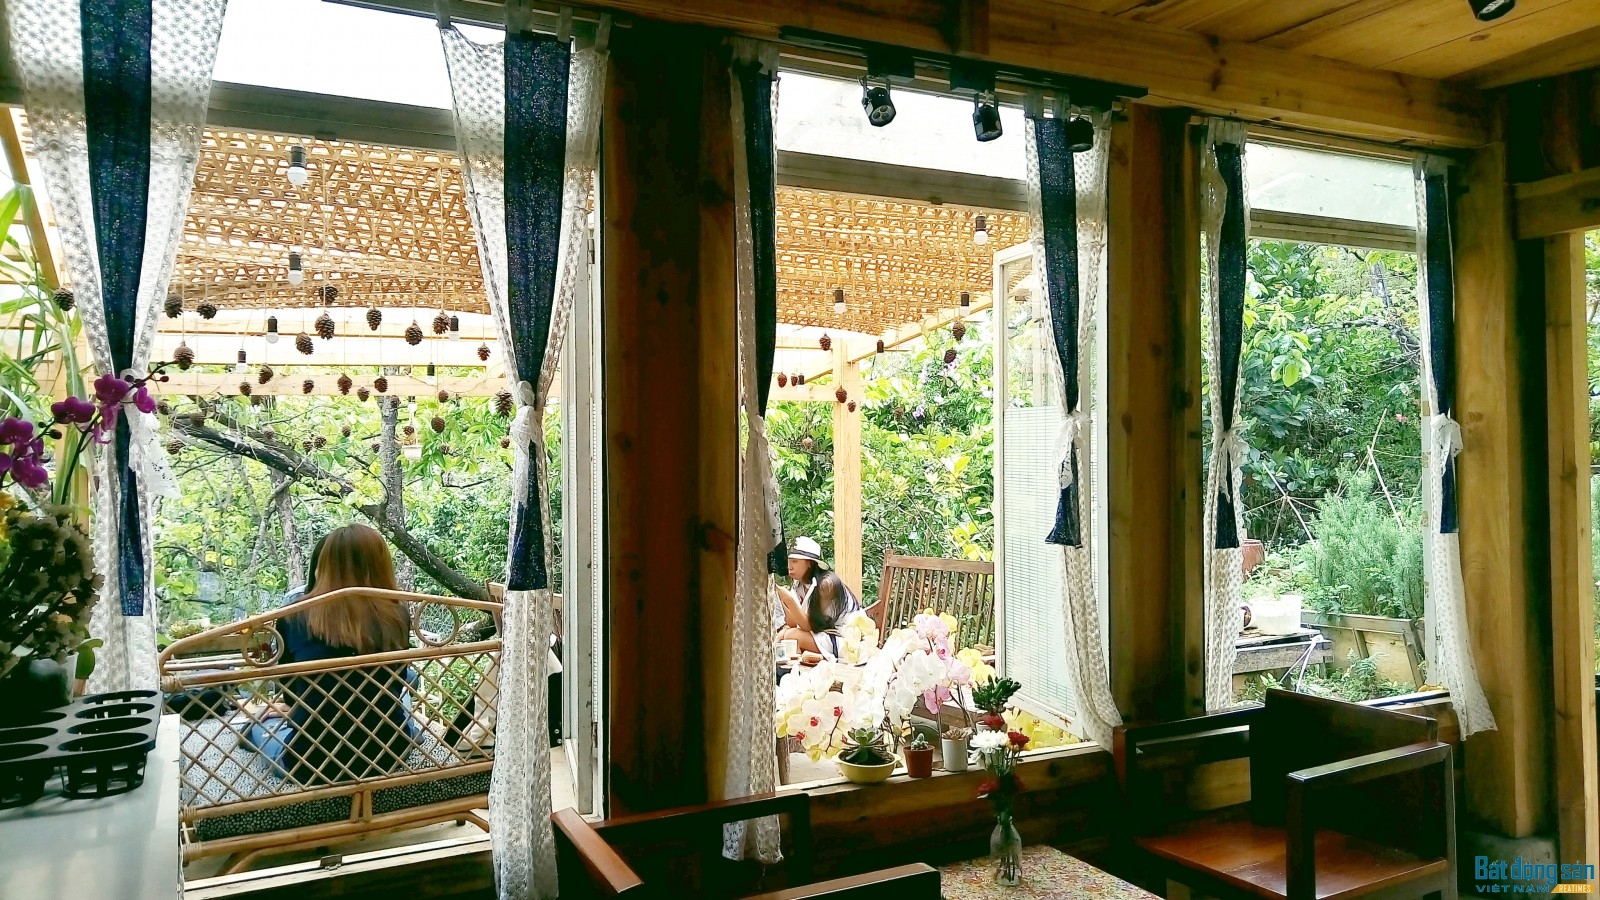 Ở nơi đây, trong quán nhỏ xinh, khách có thể ngồi bên khung cửa sổ đợi nhân viên lấy nước xuân hãm một bình trà và cùng nhắm những rừng thông ẩn ẩn hiện hiện qua những đóa hoa nở dưới những cầu thang gỗ.